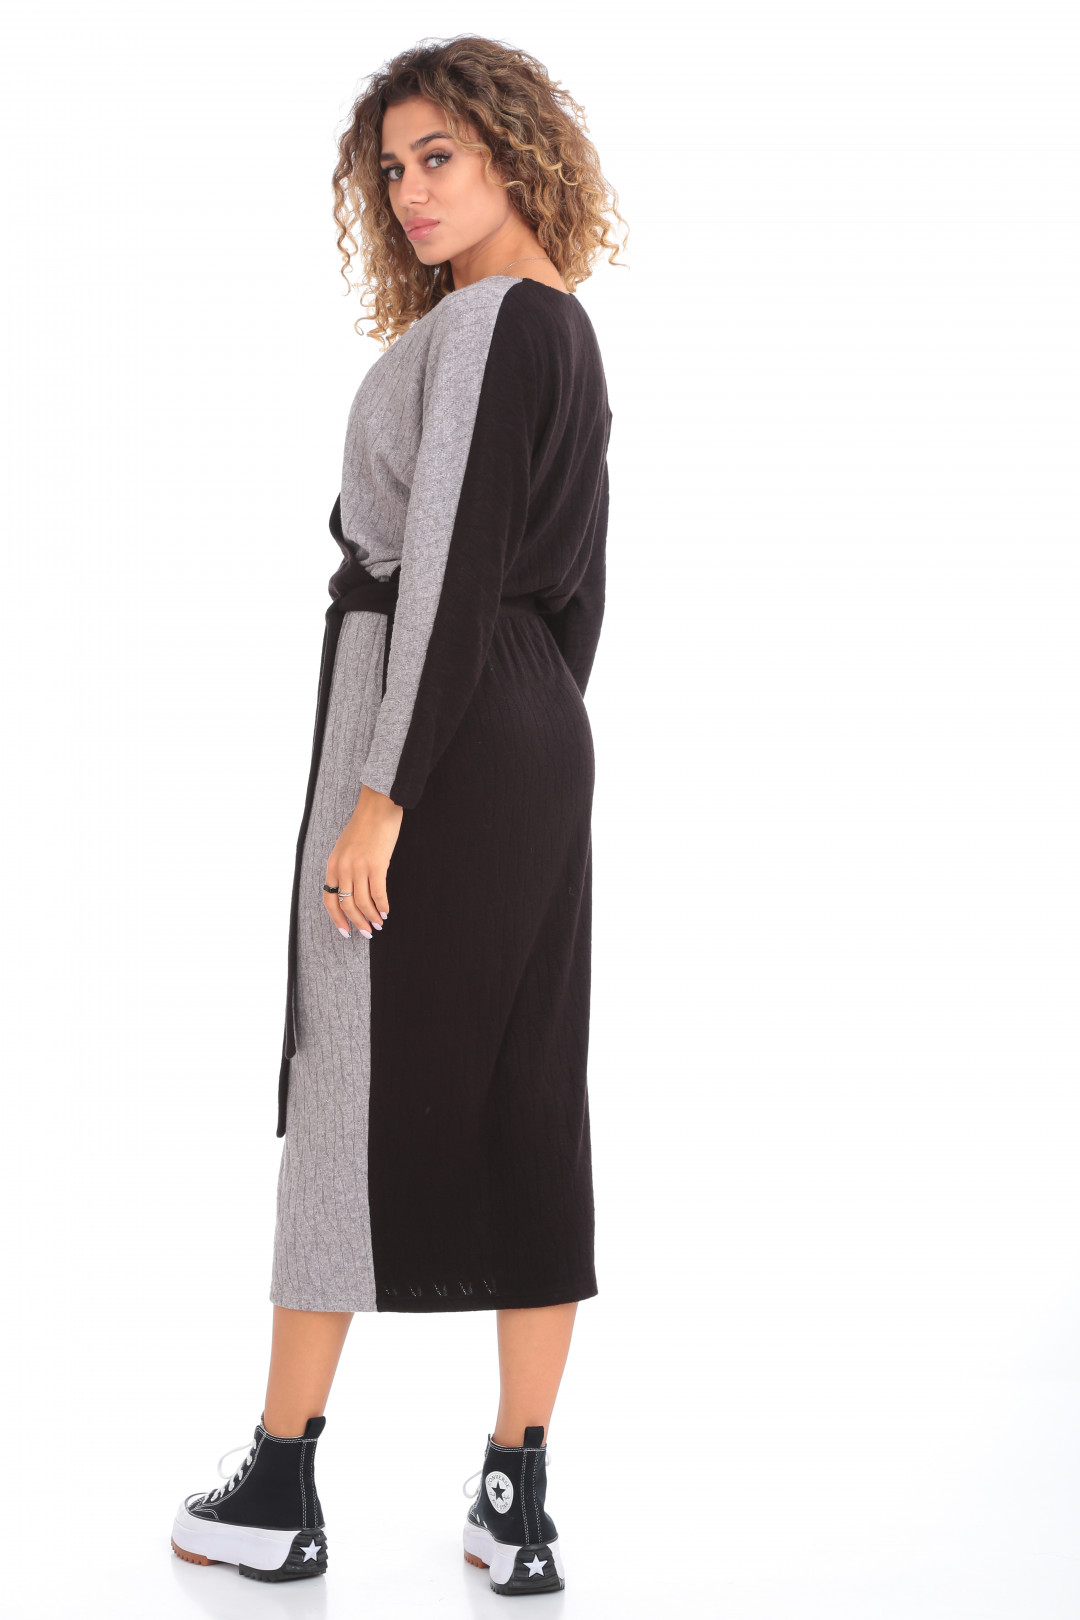 Платье Карина Делюкс М-1055-1 серо-черный